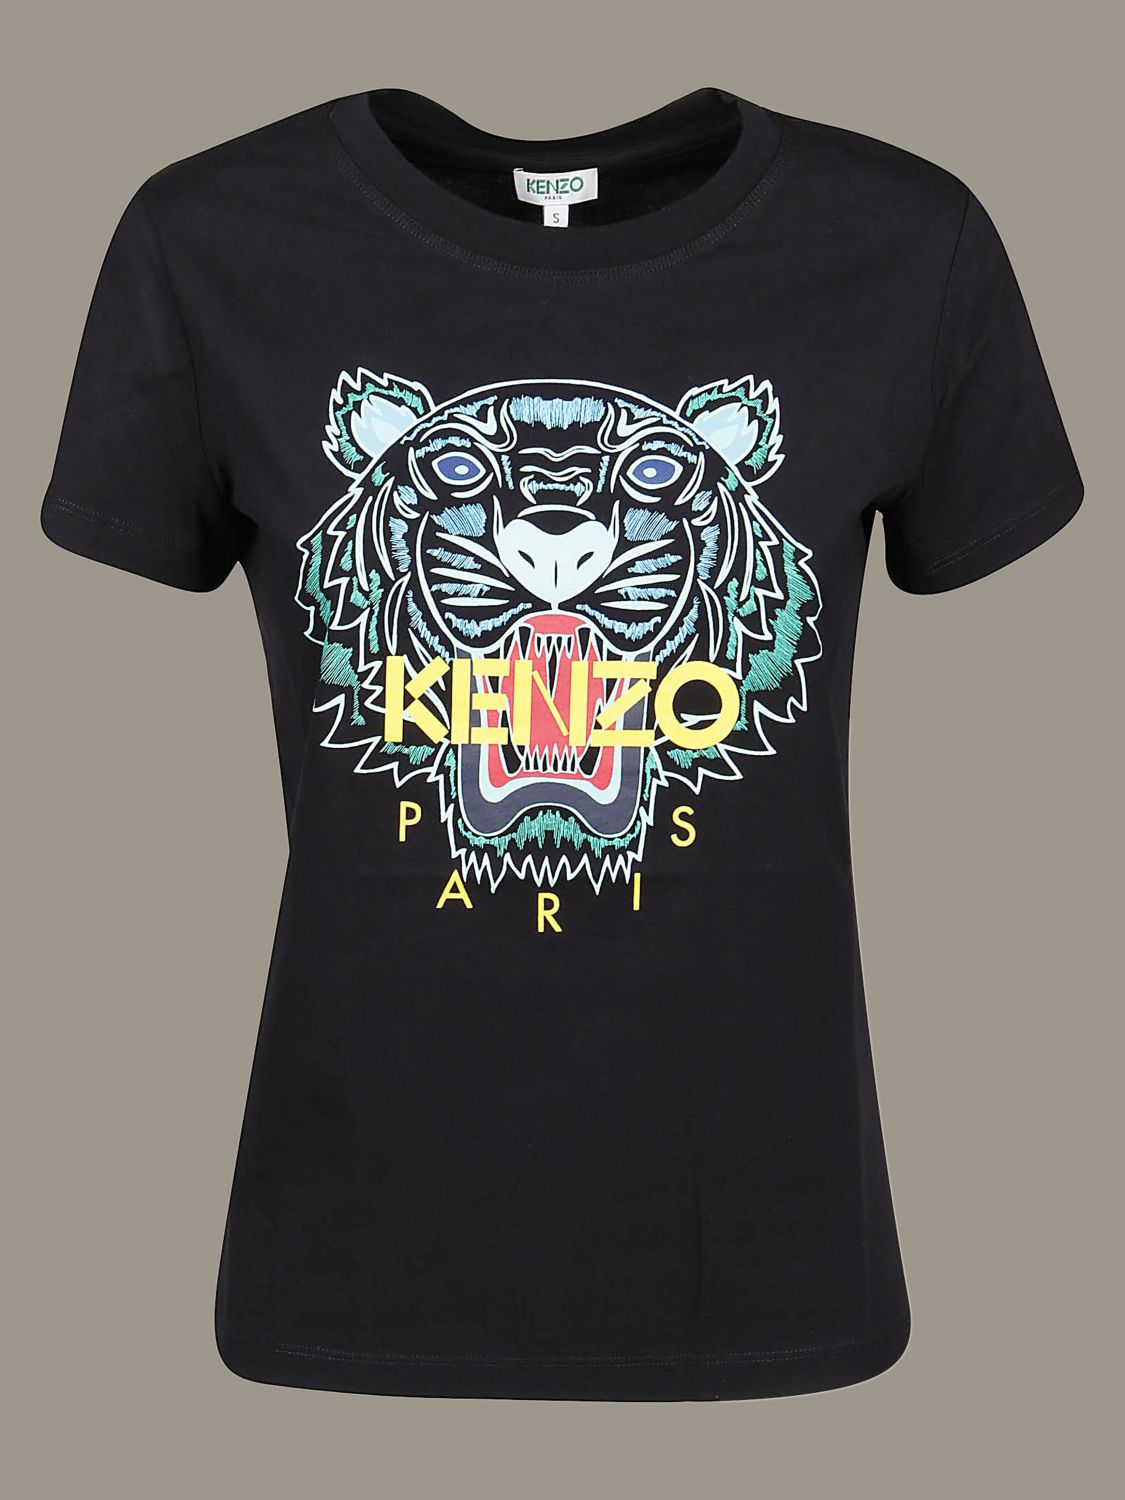 kenzo t shirt women's